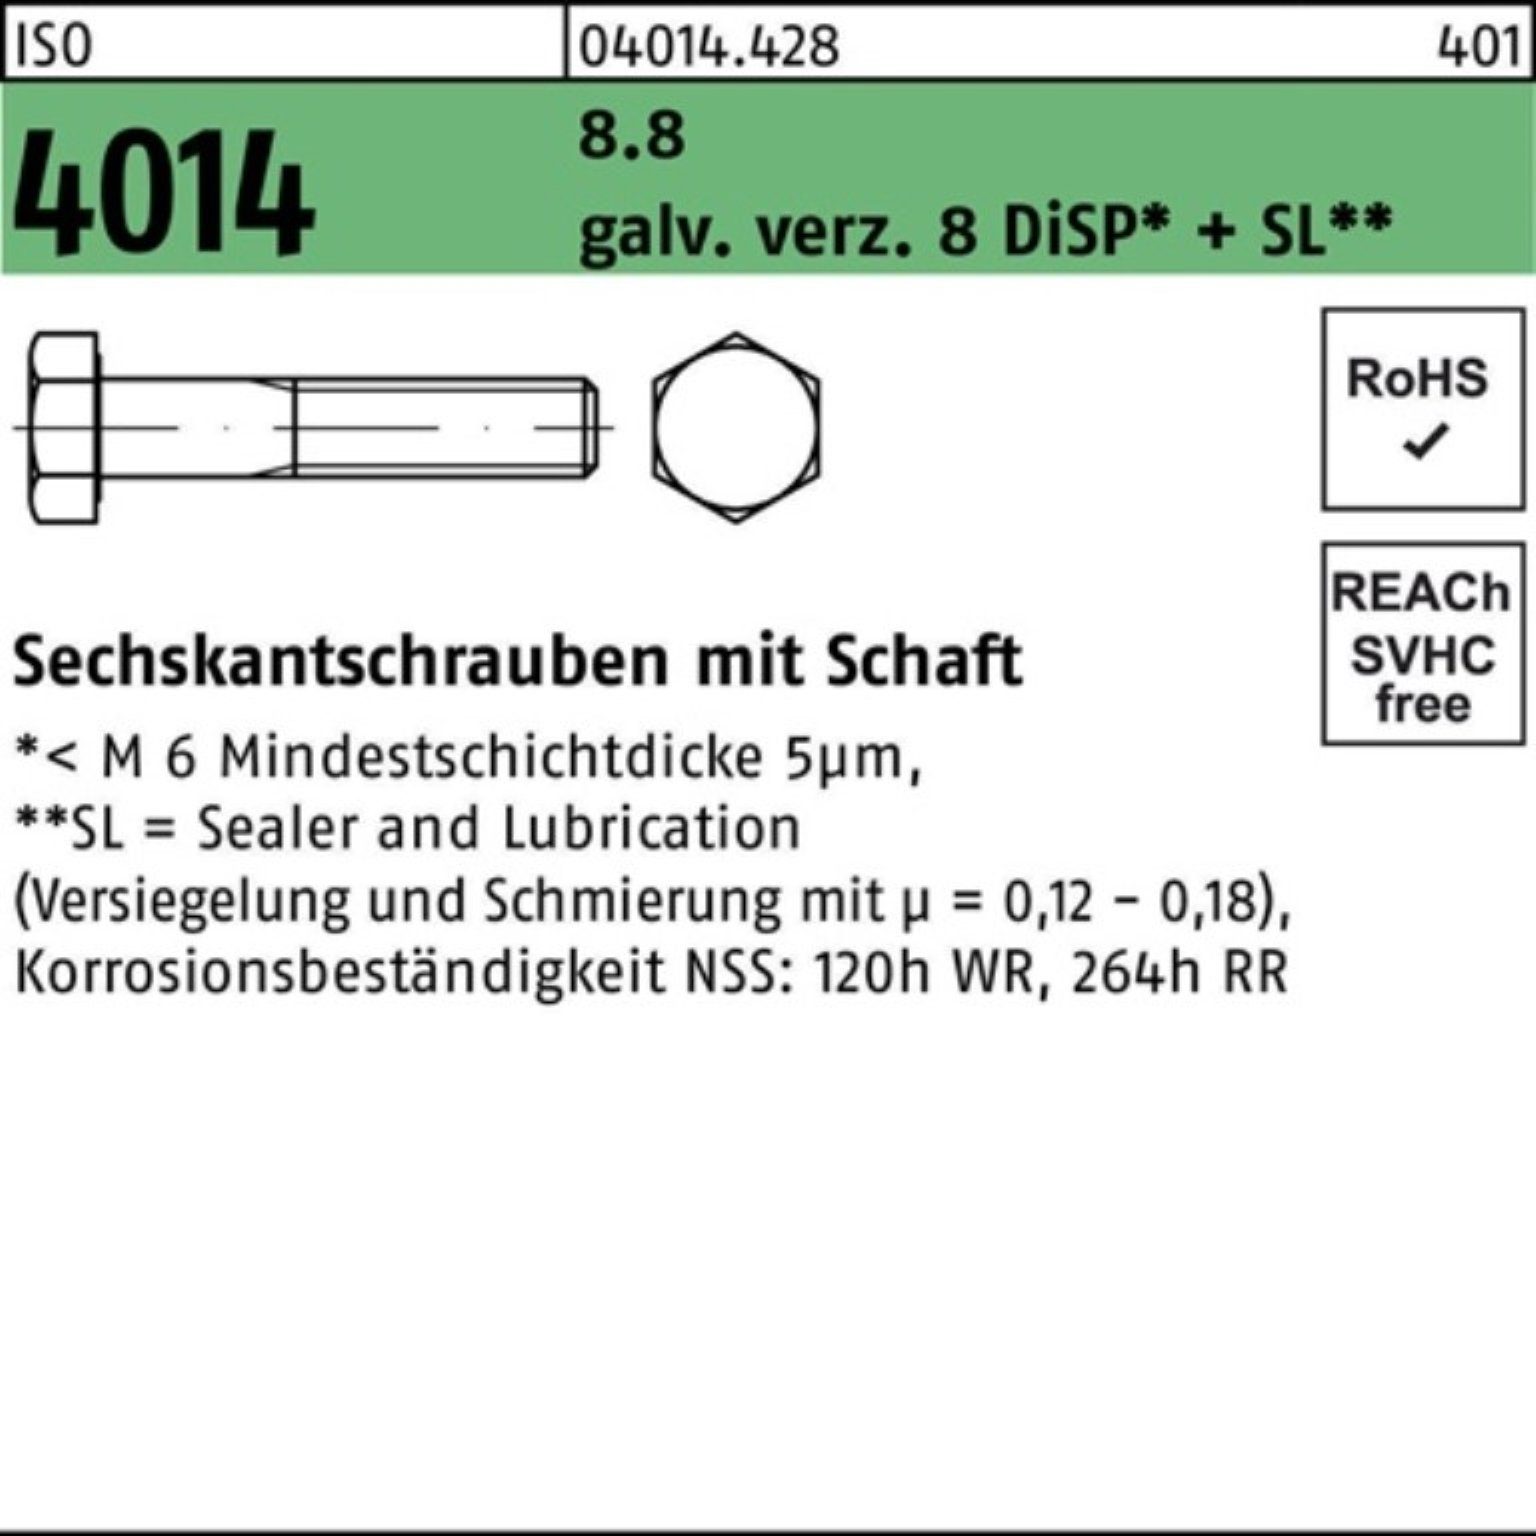 Bufab Sechskantschraube 100er Pack Sechskantschraube ISO 4014 Schaft M16x140 8.8 galv.verz. 8